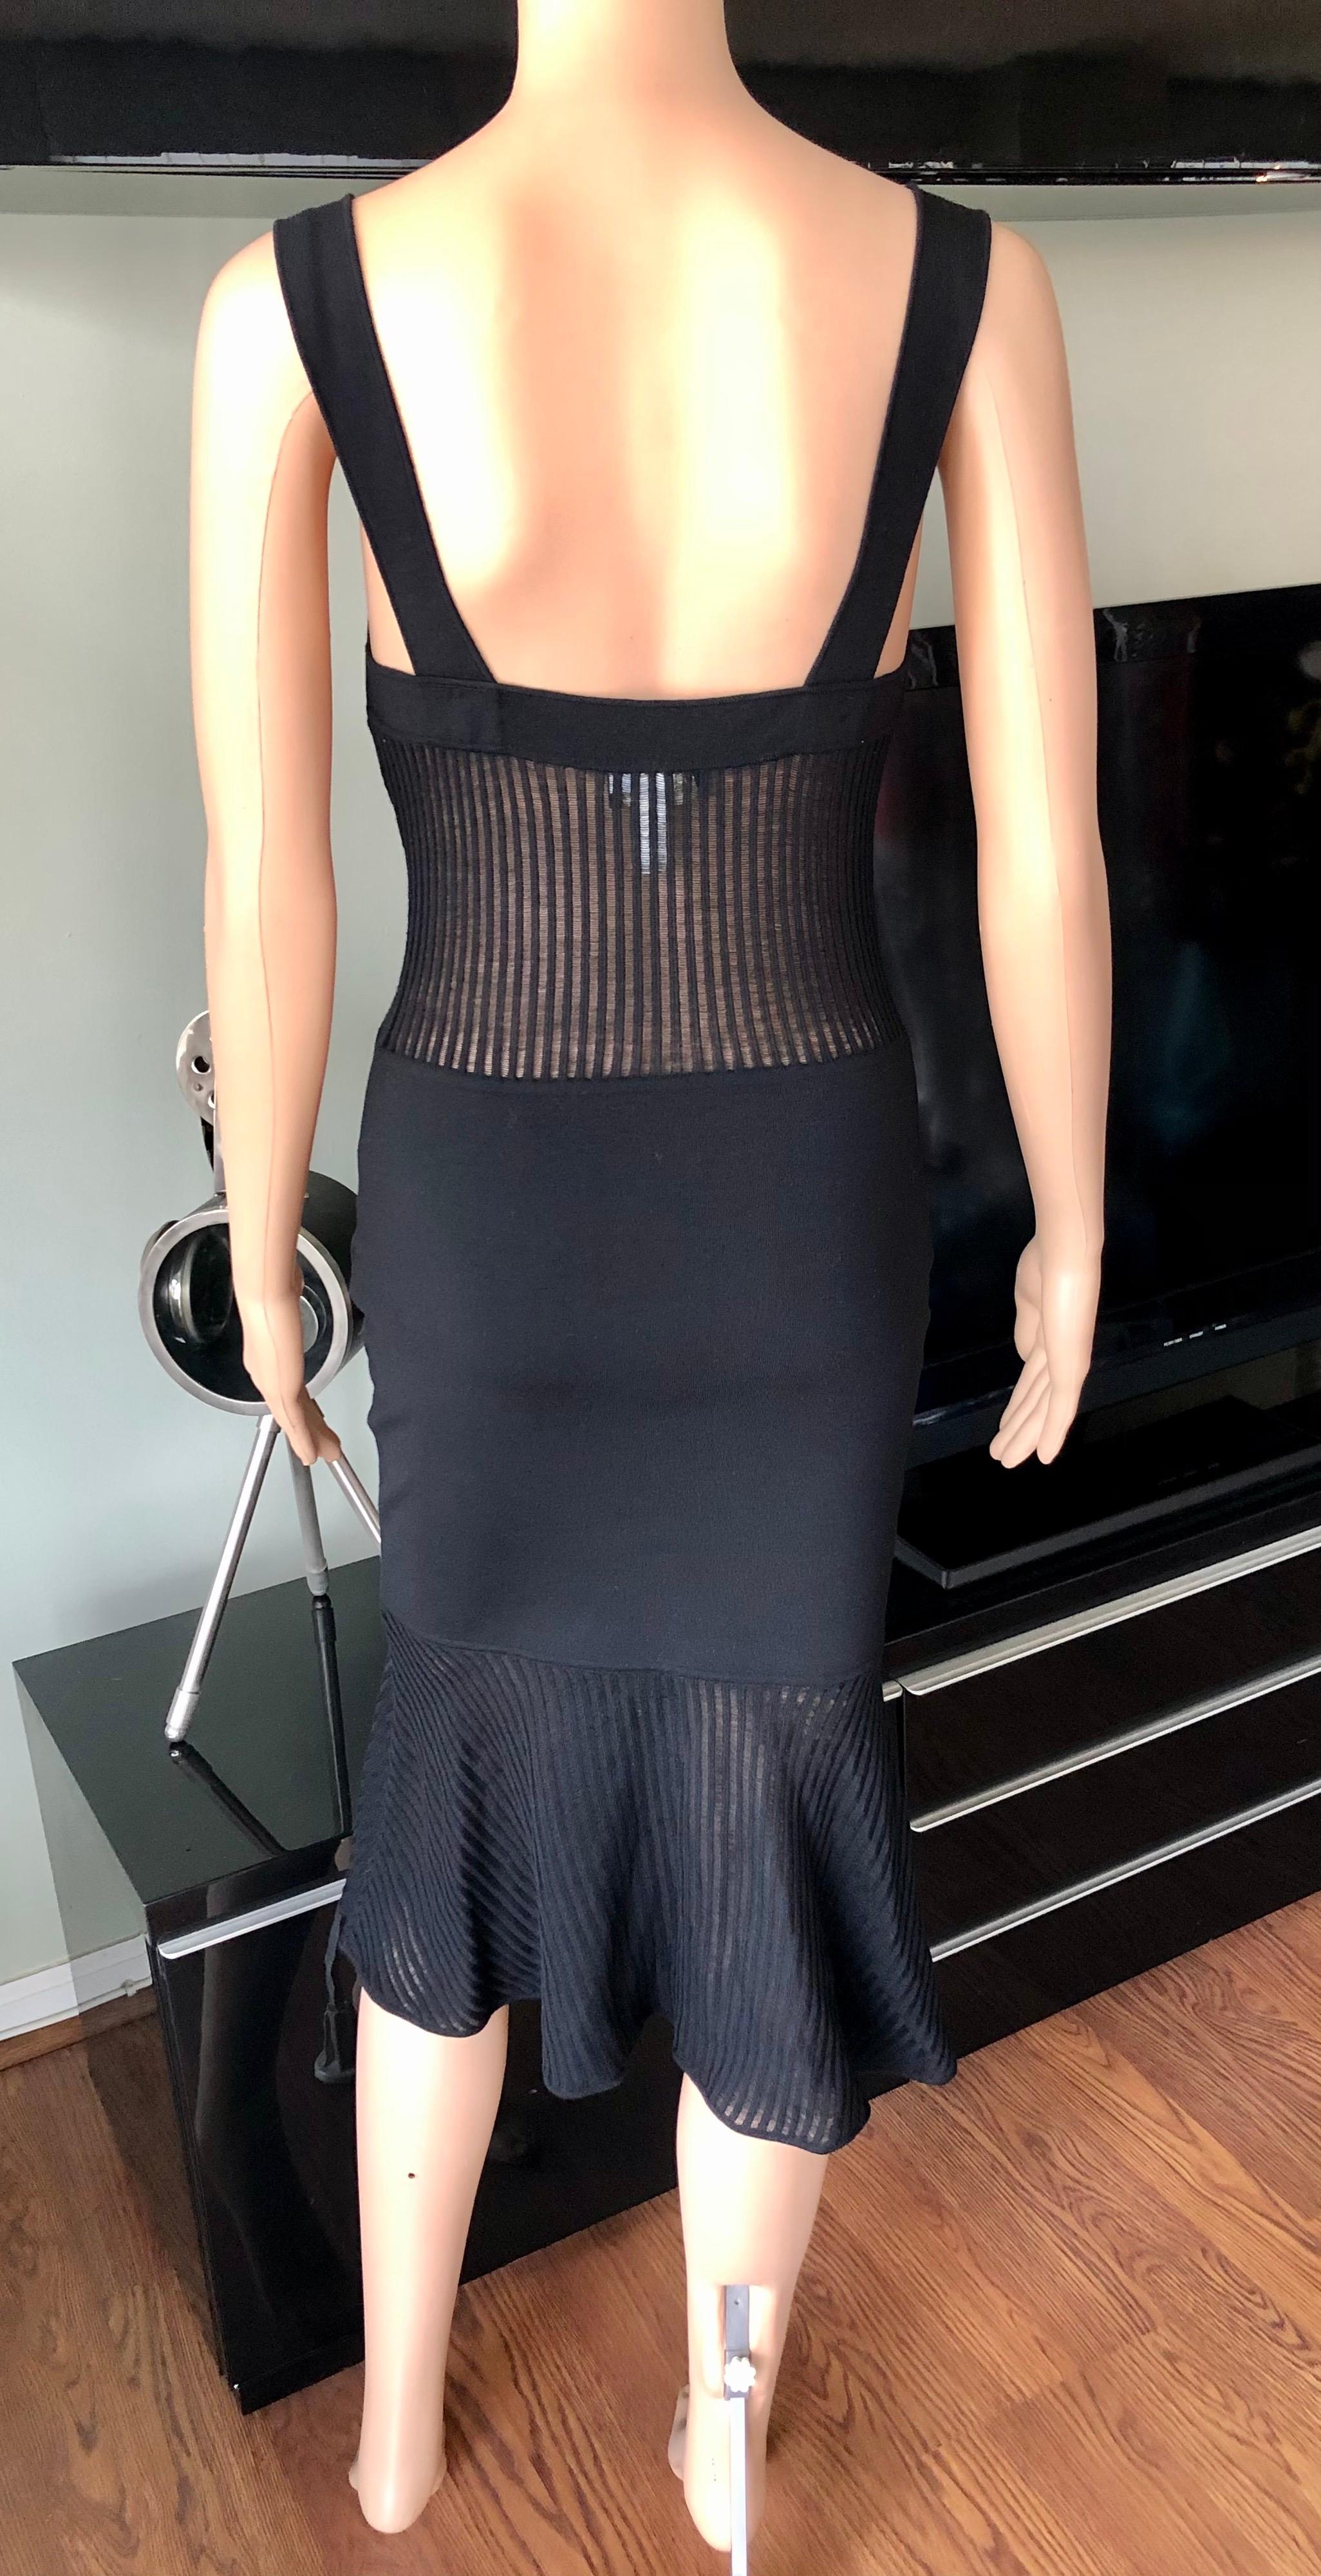 Gianni Versace 1990’s Vintage Sheer Knit Black Dress For Sale 1